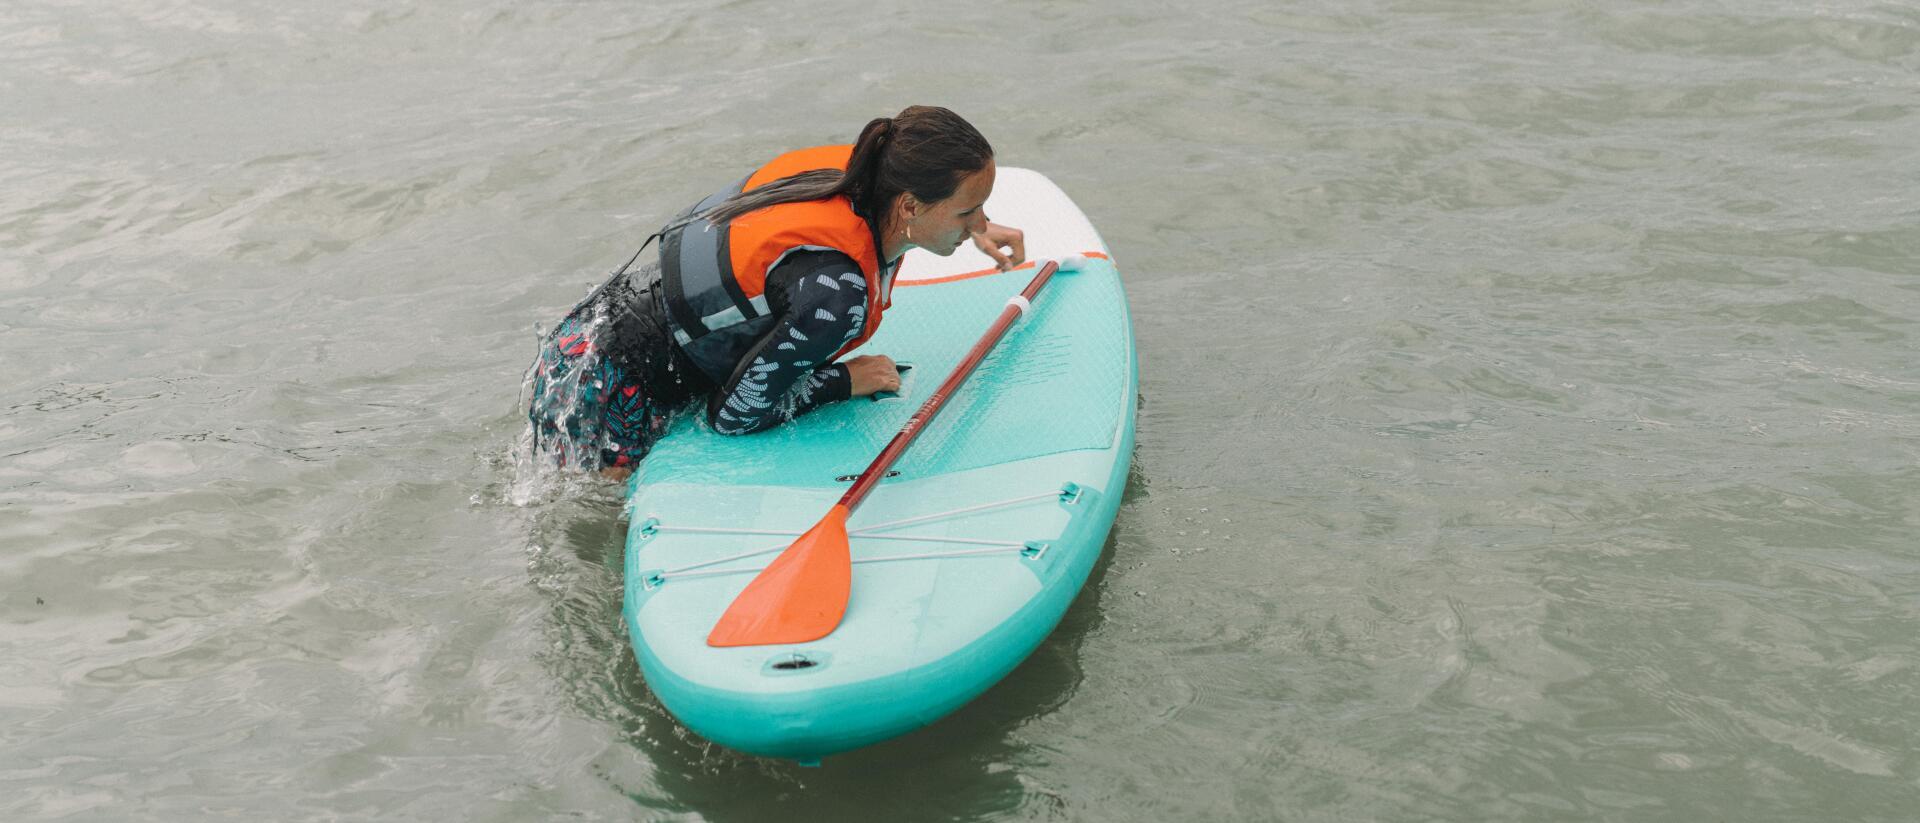 Comment se mettre debout sur un paddle ? 